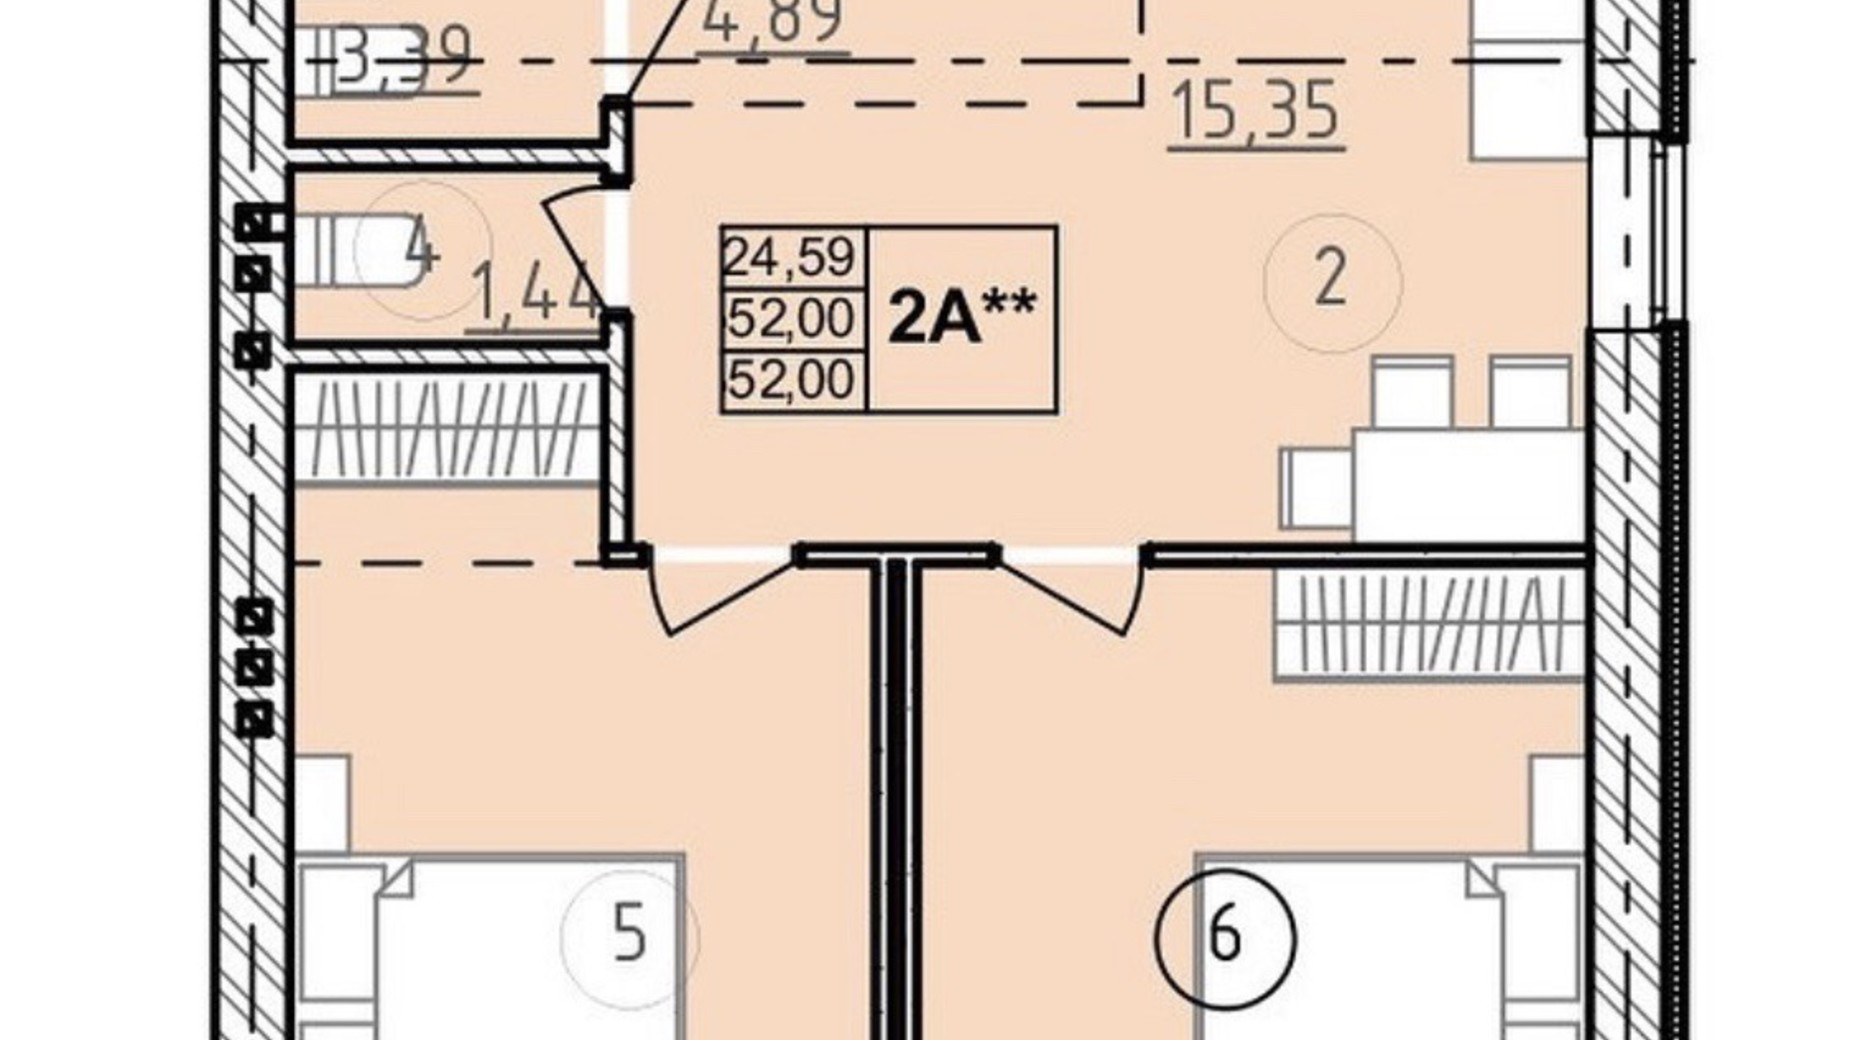 Планировка 2-комнатной квартиры в ЖК Сенсация 52 м², фото 556131